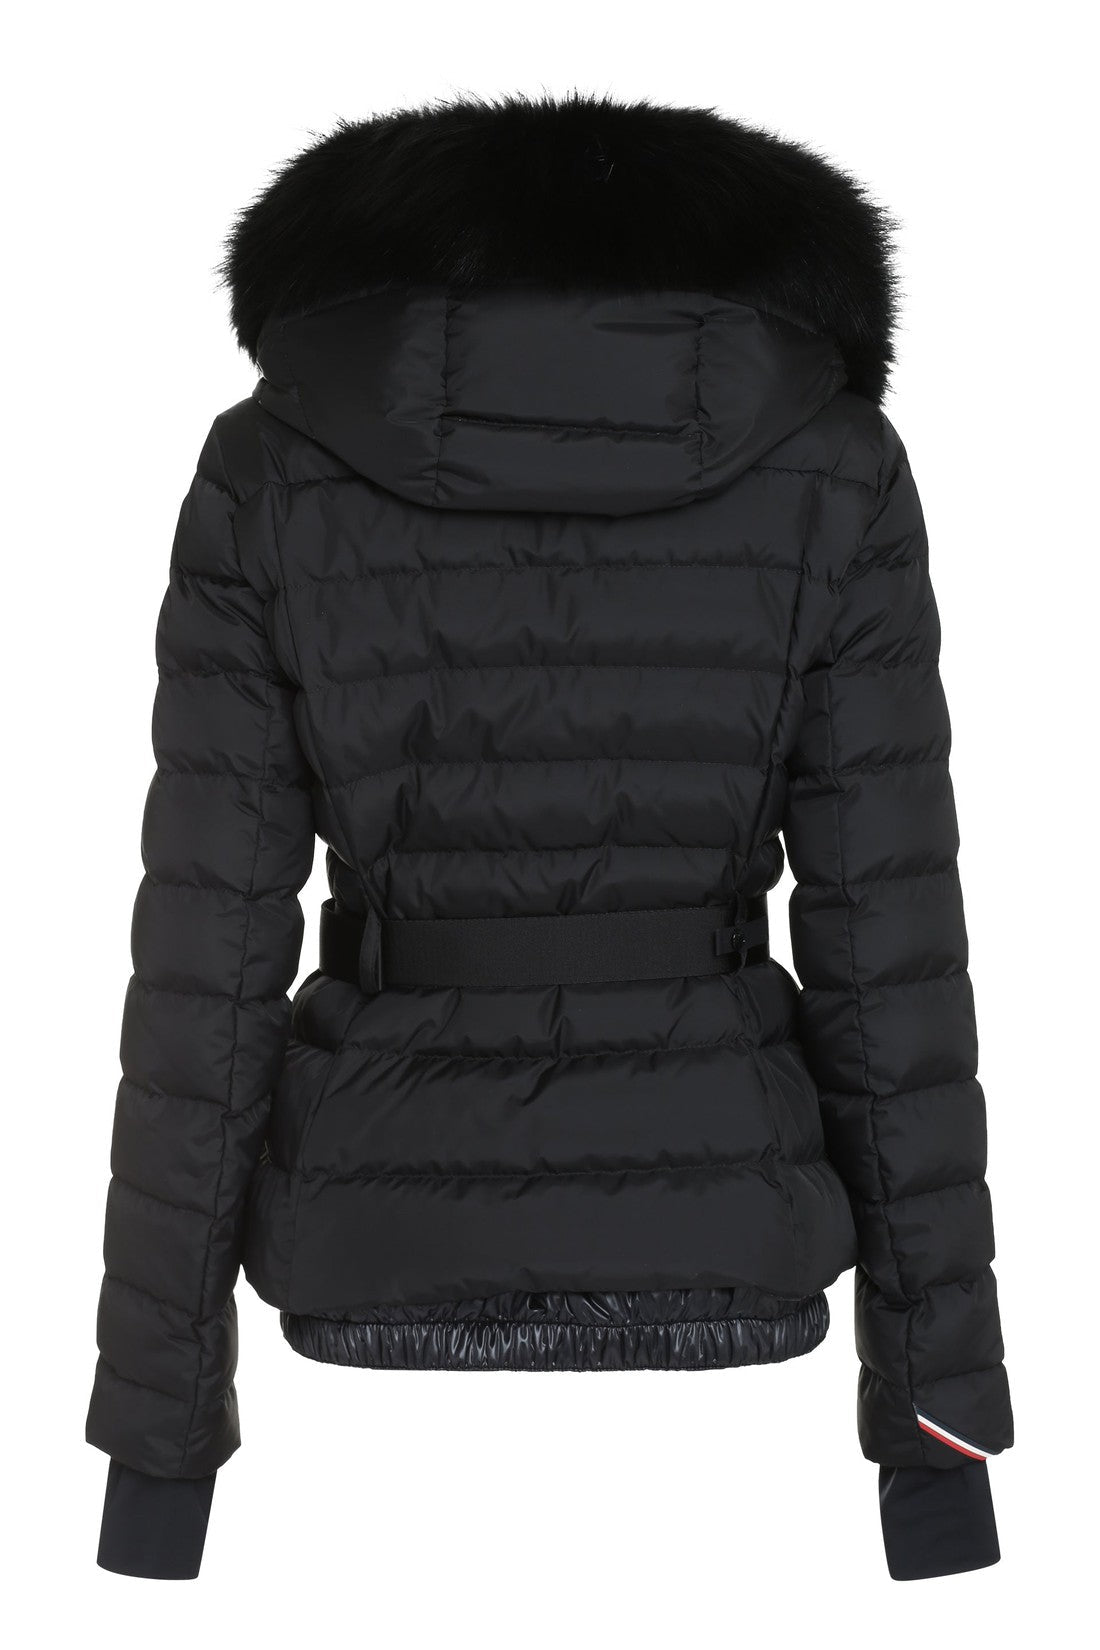 Moncler Grenoble-OUTLET-SALE-Beverley fur hood down jacket-ARCHIVIST